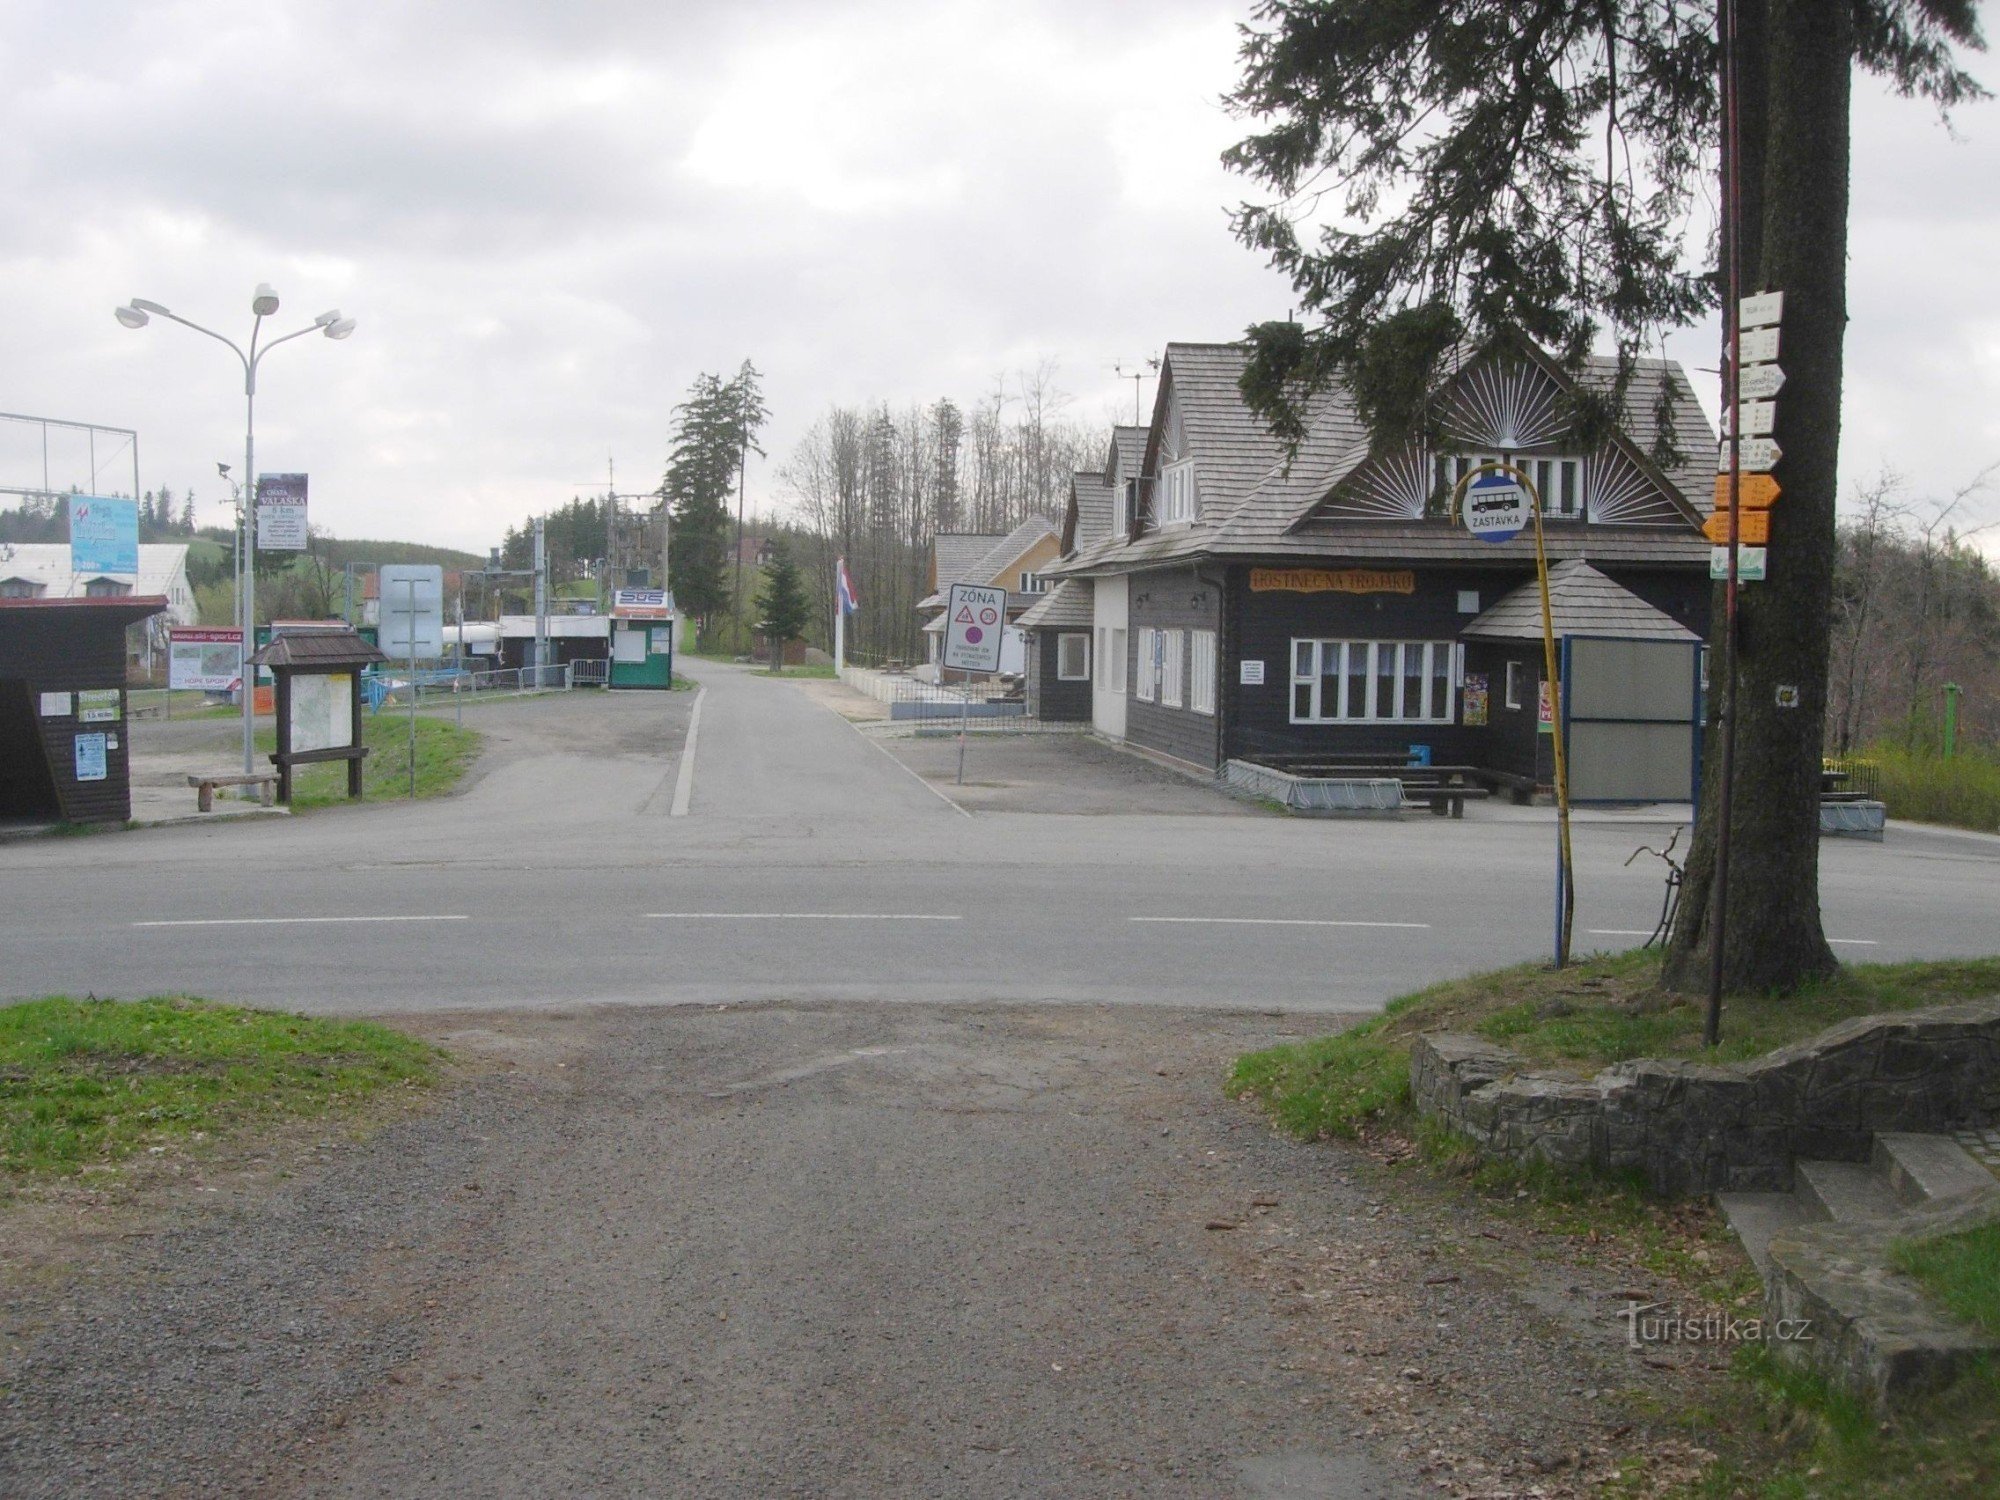 Een driewegkruising met een herberg, een bushalte, een skigebied en een wegwijzer